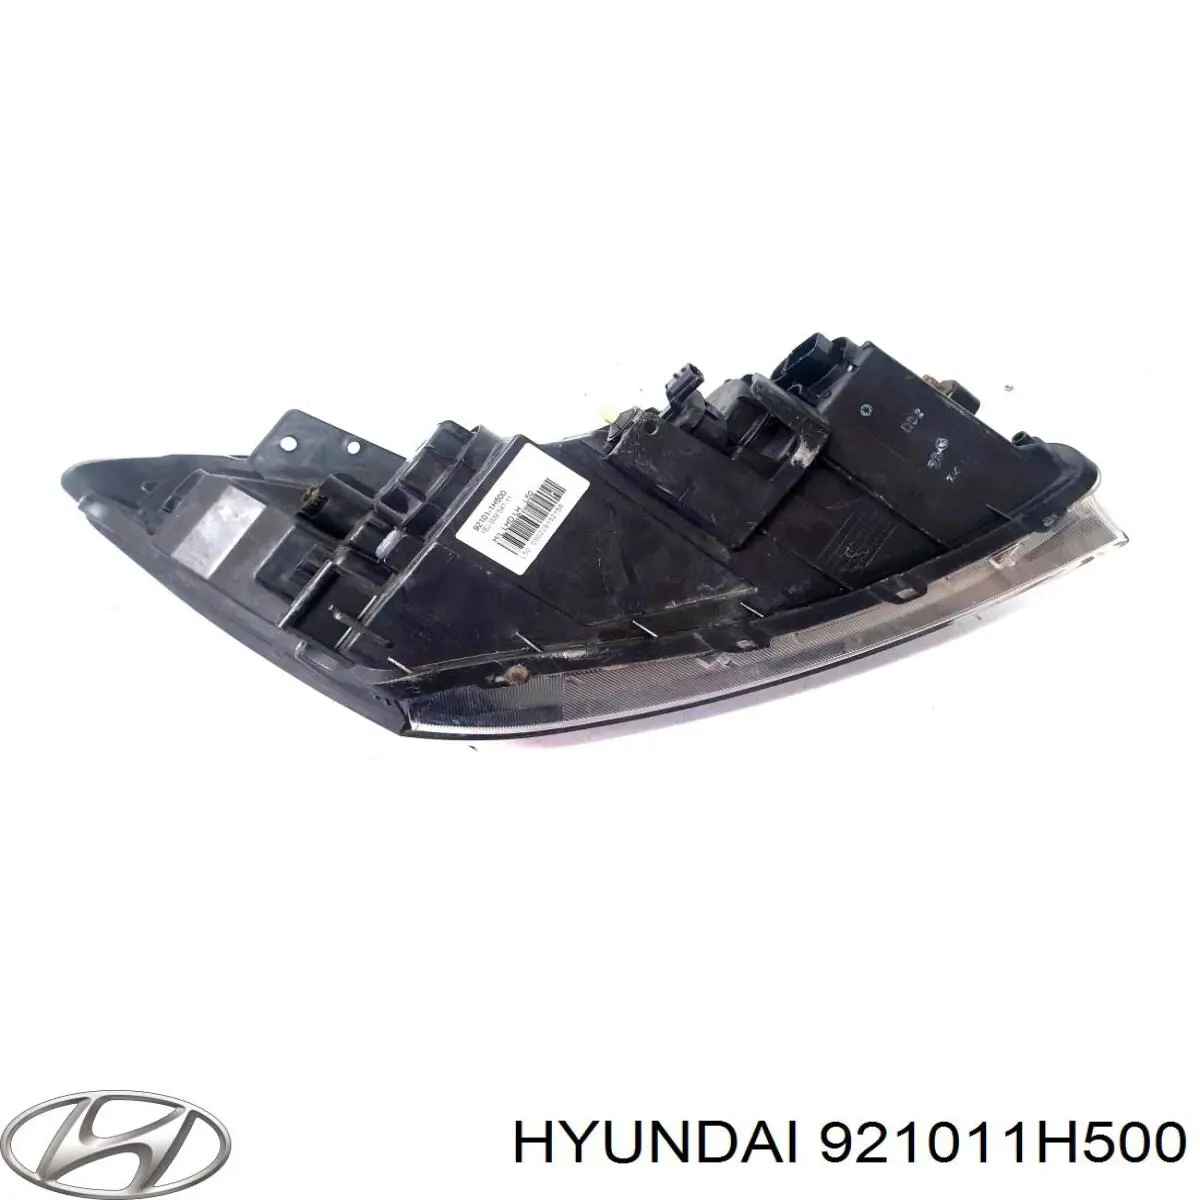 921011H500 Hyundai/Kia faro izquierdo